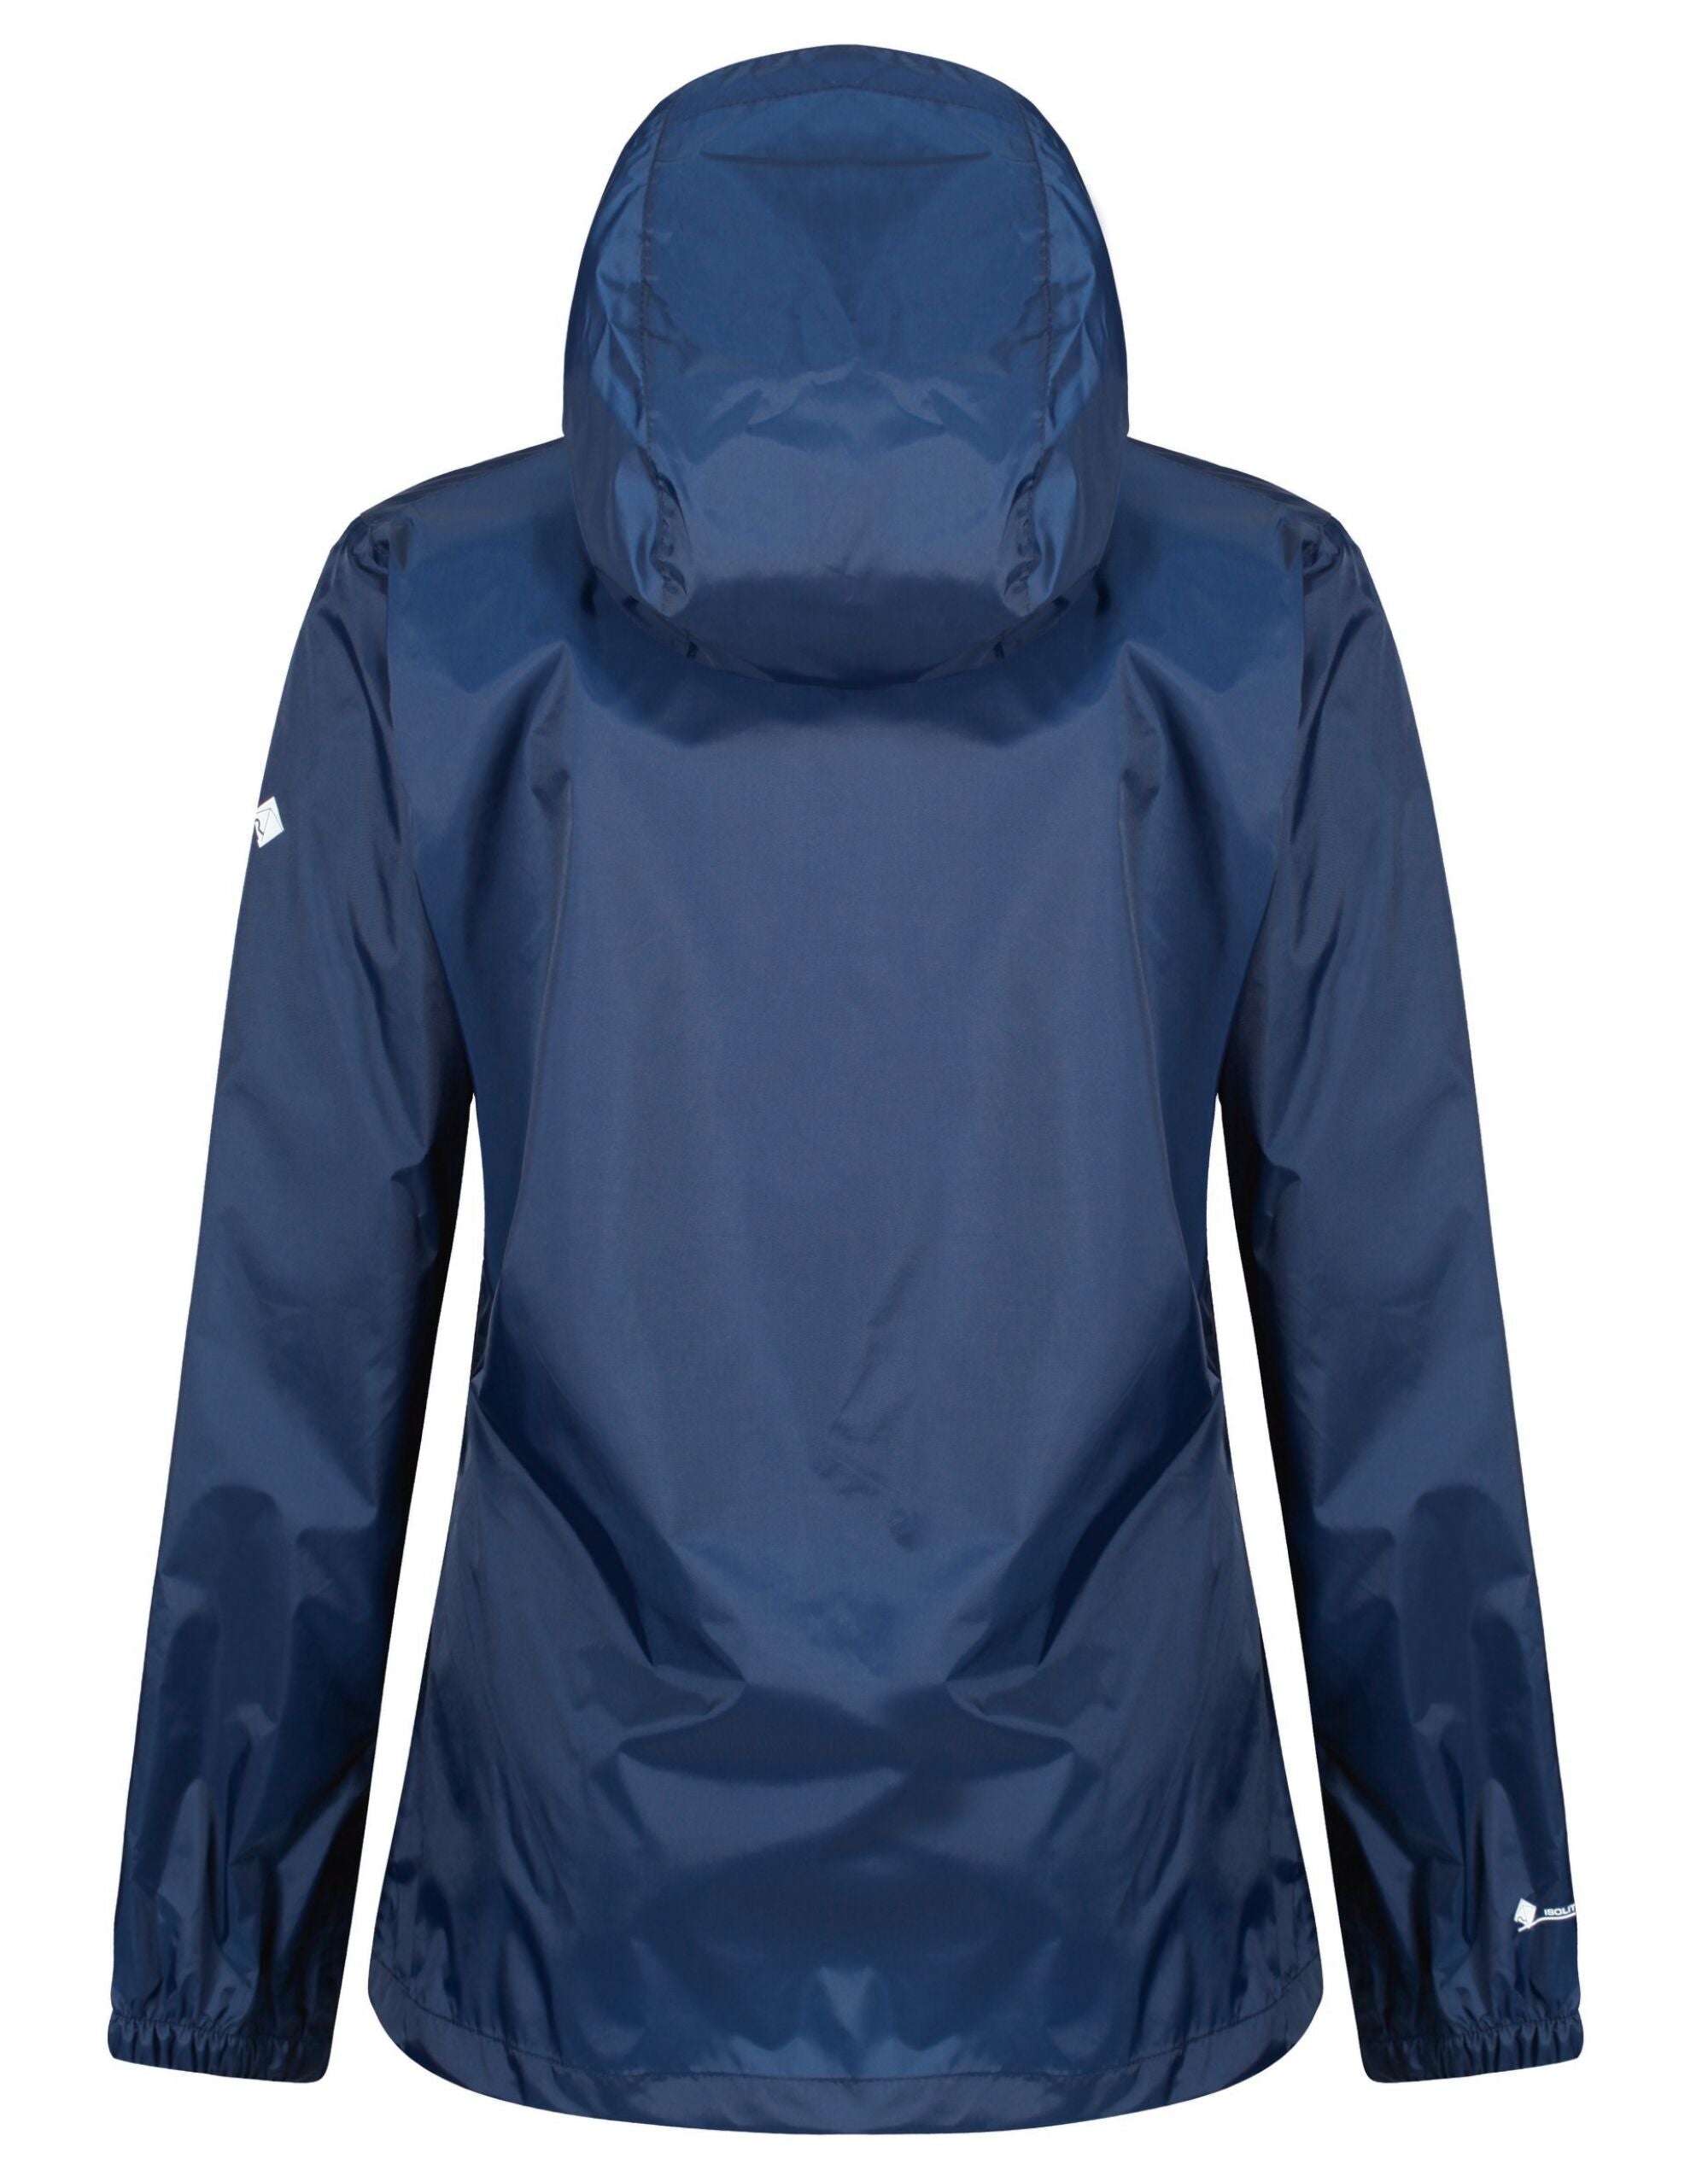 Regatta Professional Women's Pro Packaway Jacket Waterproof and breathable (TRW249)